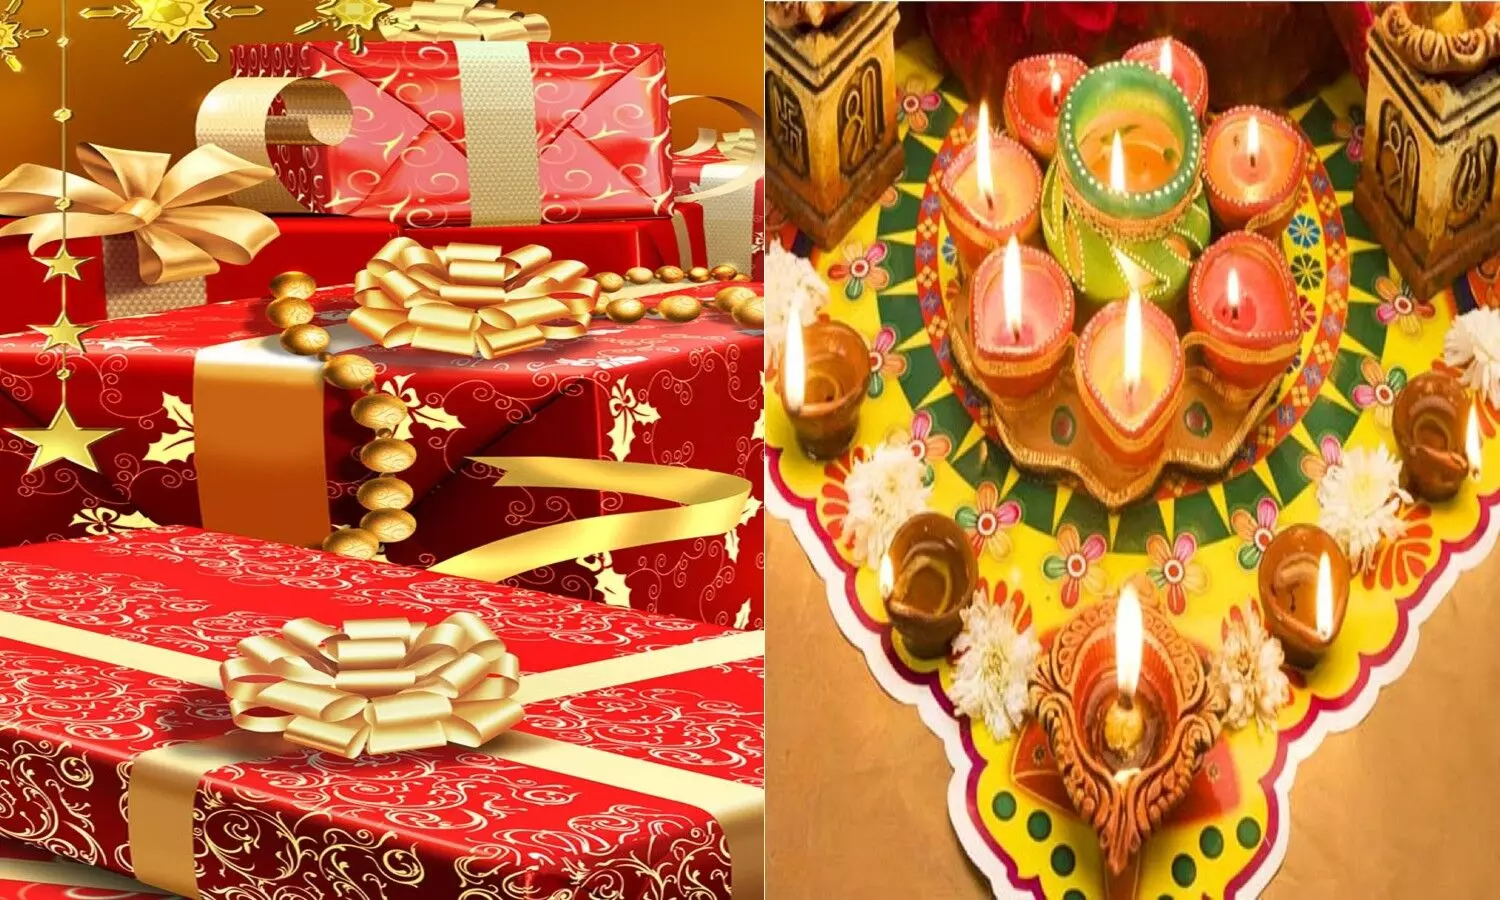 Diwali Gift Ideas